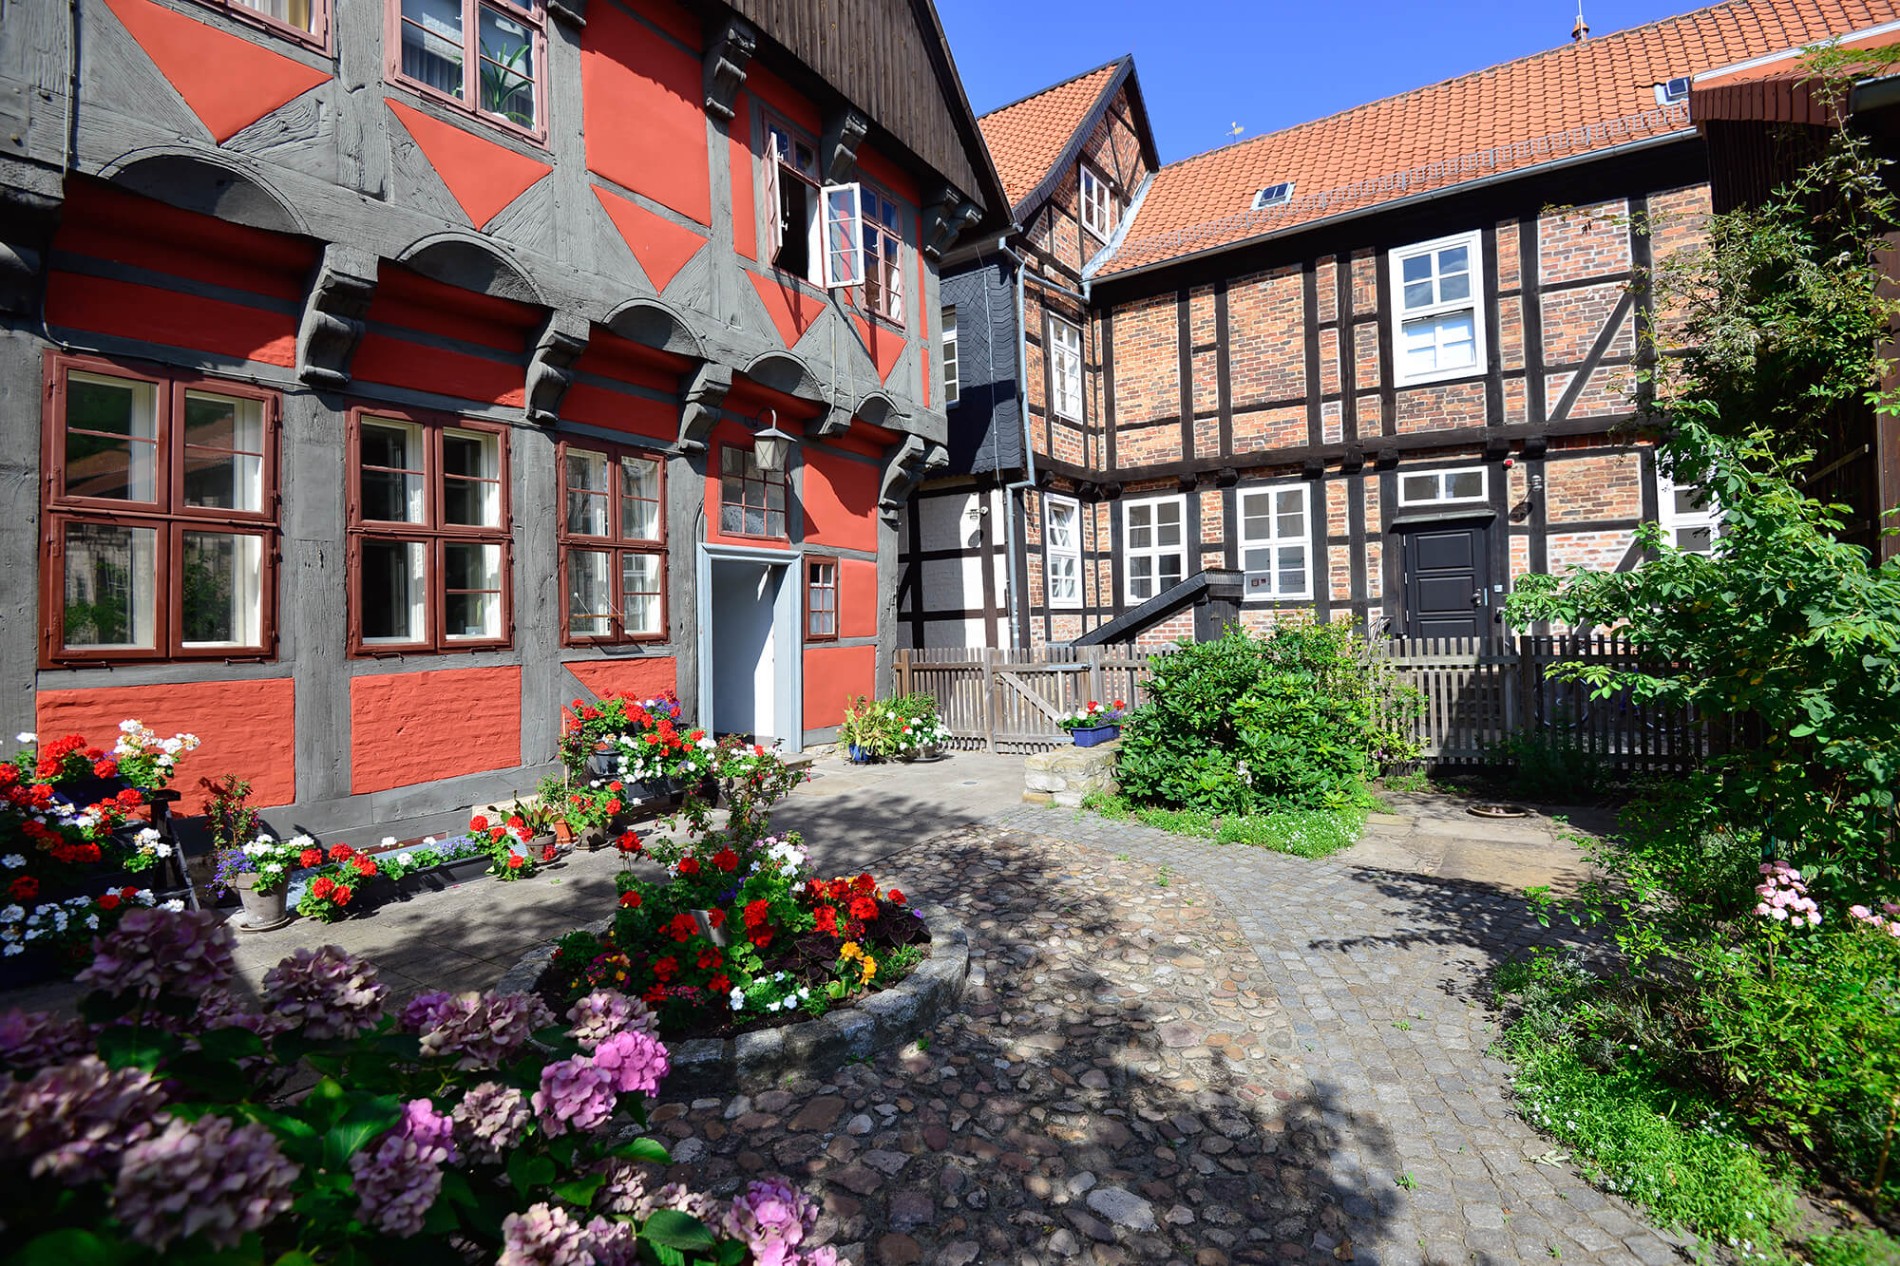 Innenhof des Kavalierhauses mit rot-grauem Fachwerk mit Garten in der Gifhorner Altstadt